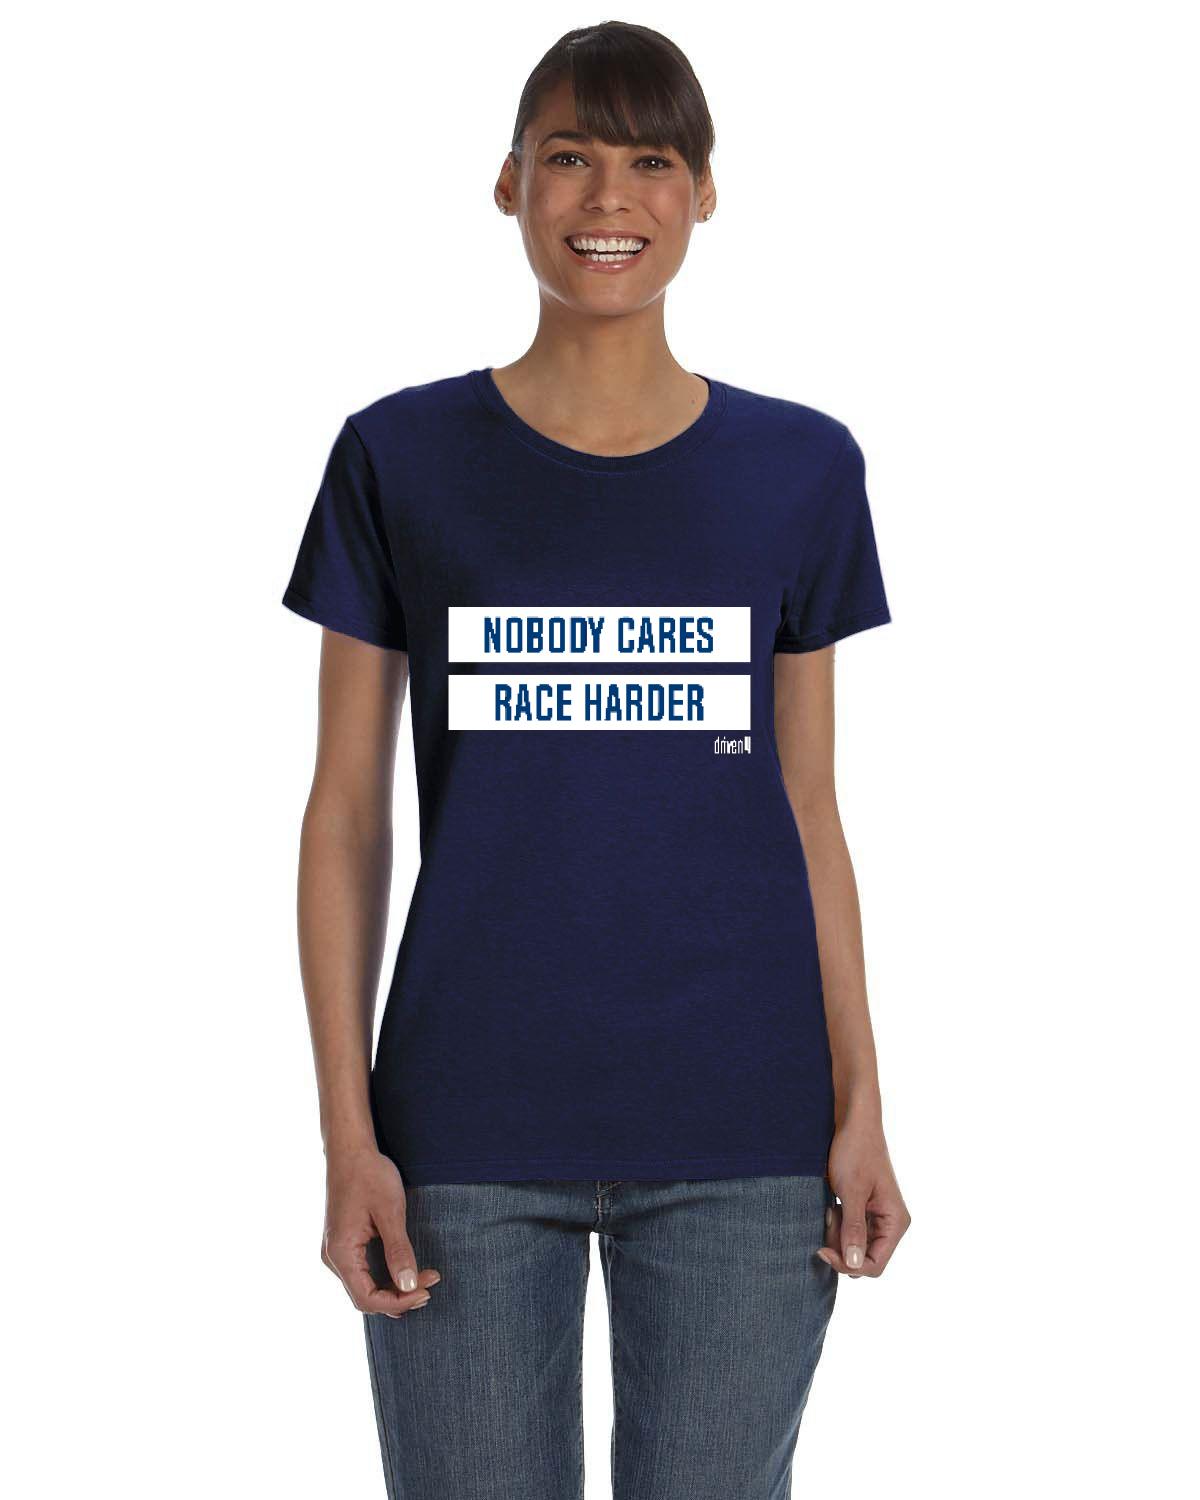 D4C Women's T-Shirt - Race Harder